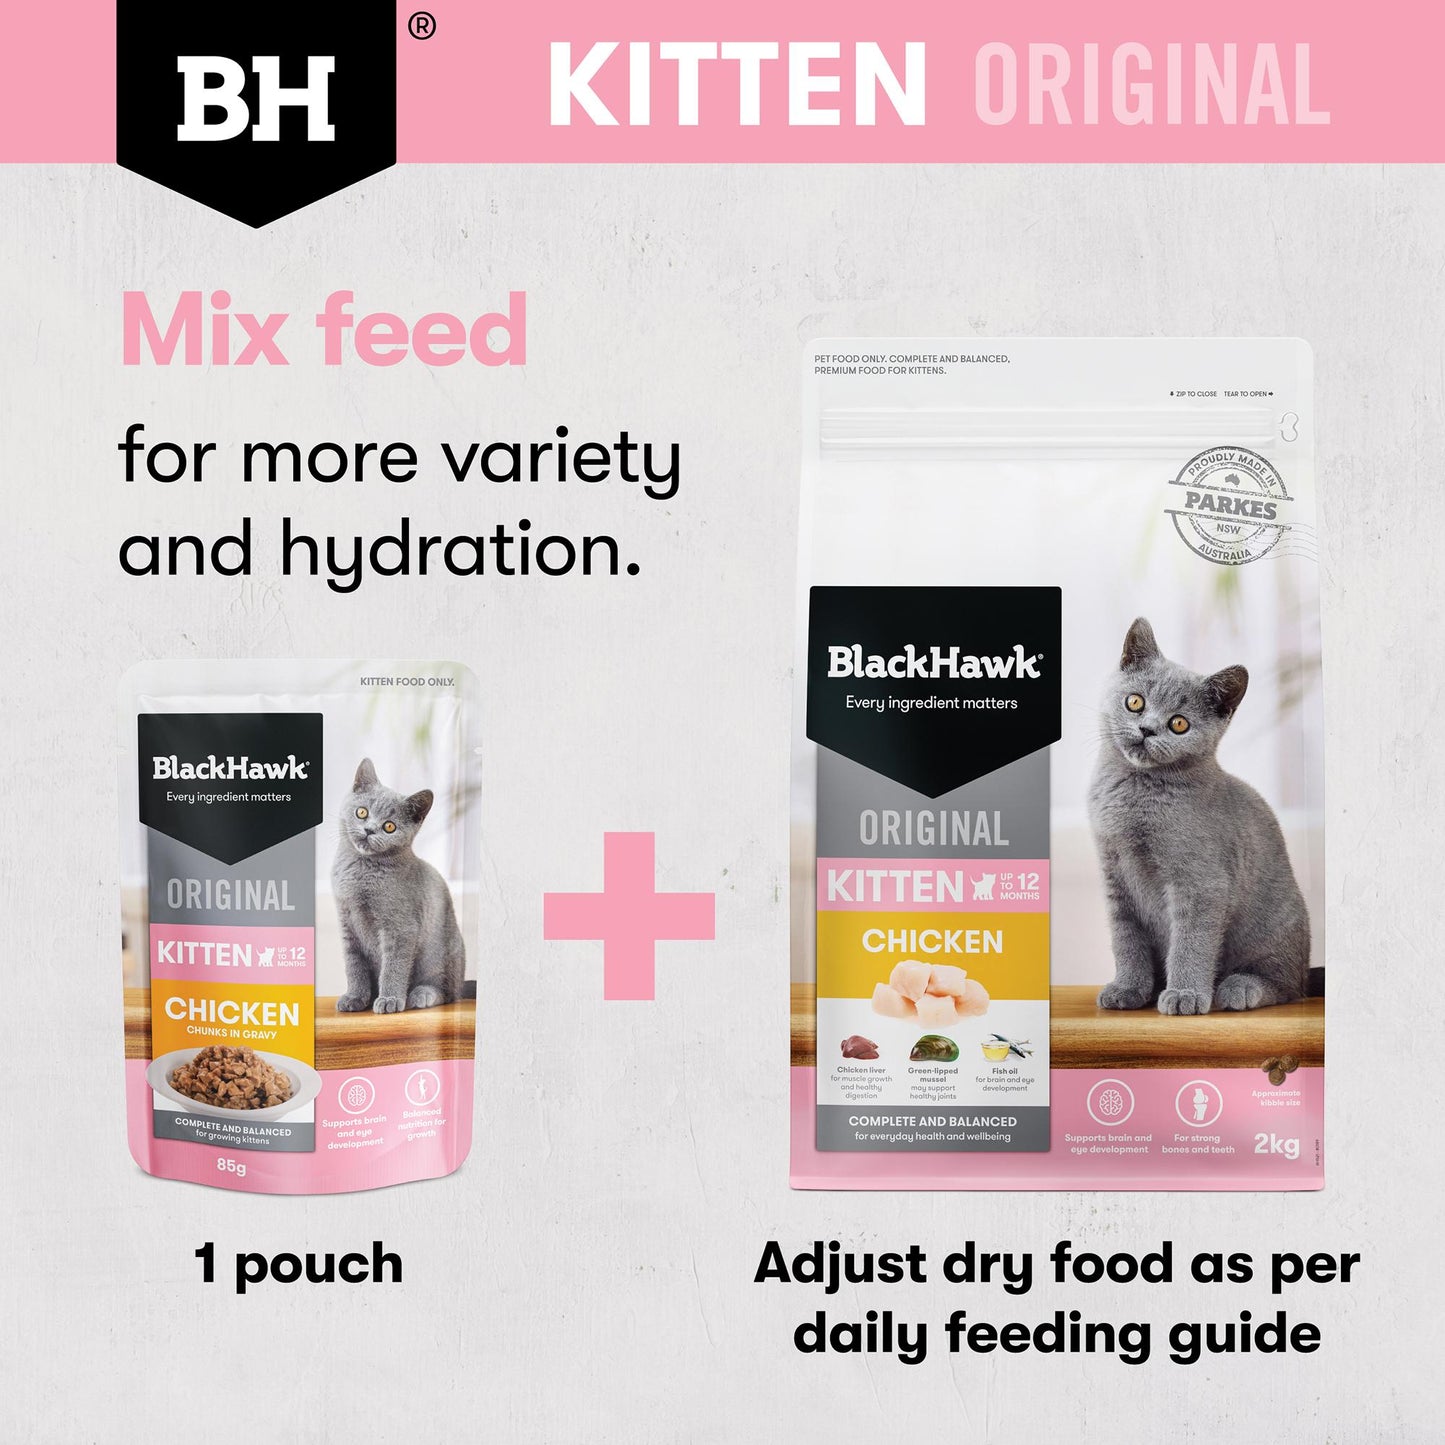 Black Hawk Original Kitten Chicken Dry Cat Food